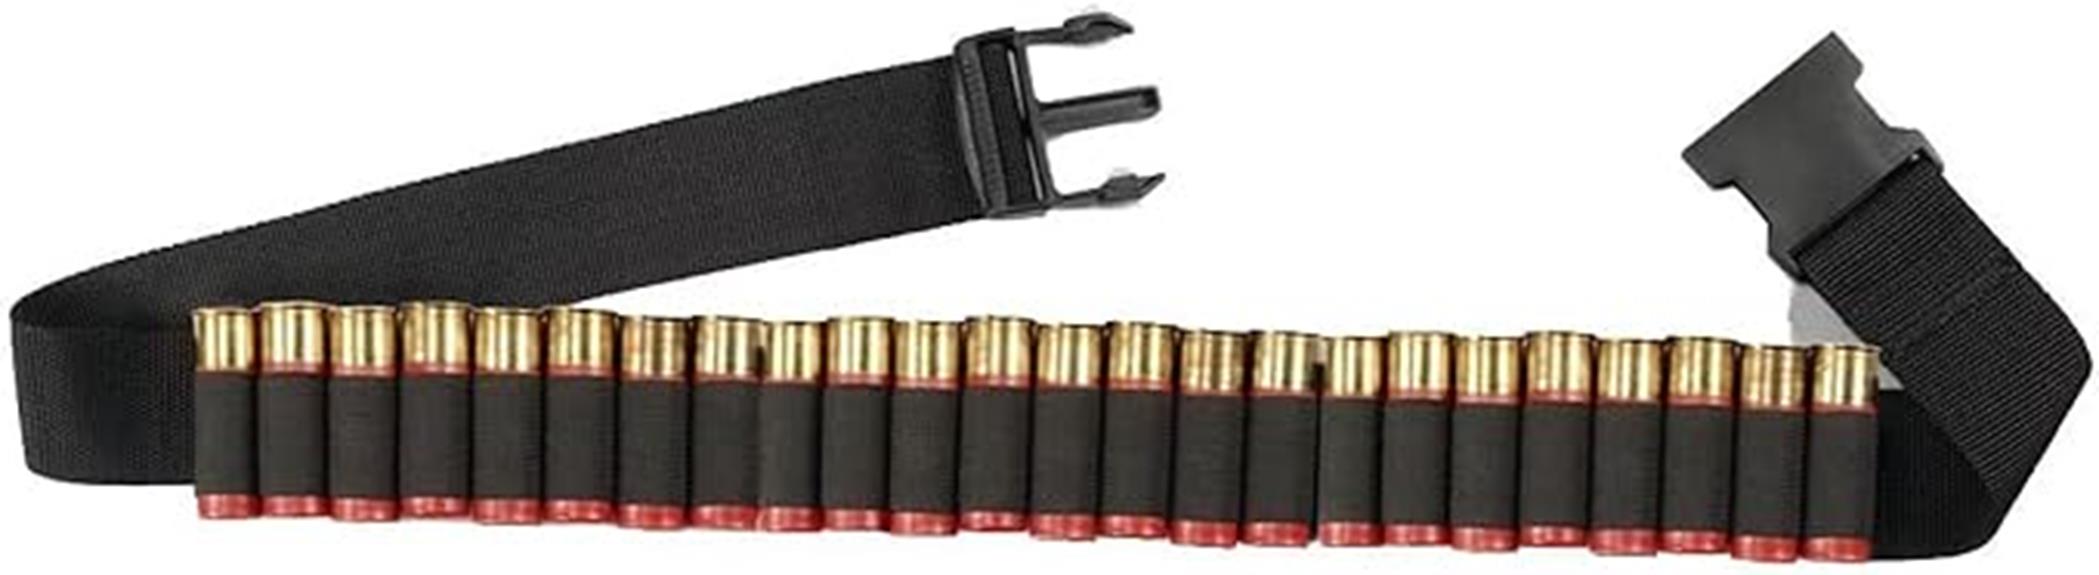 tactical shotgun shell belt